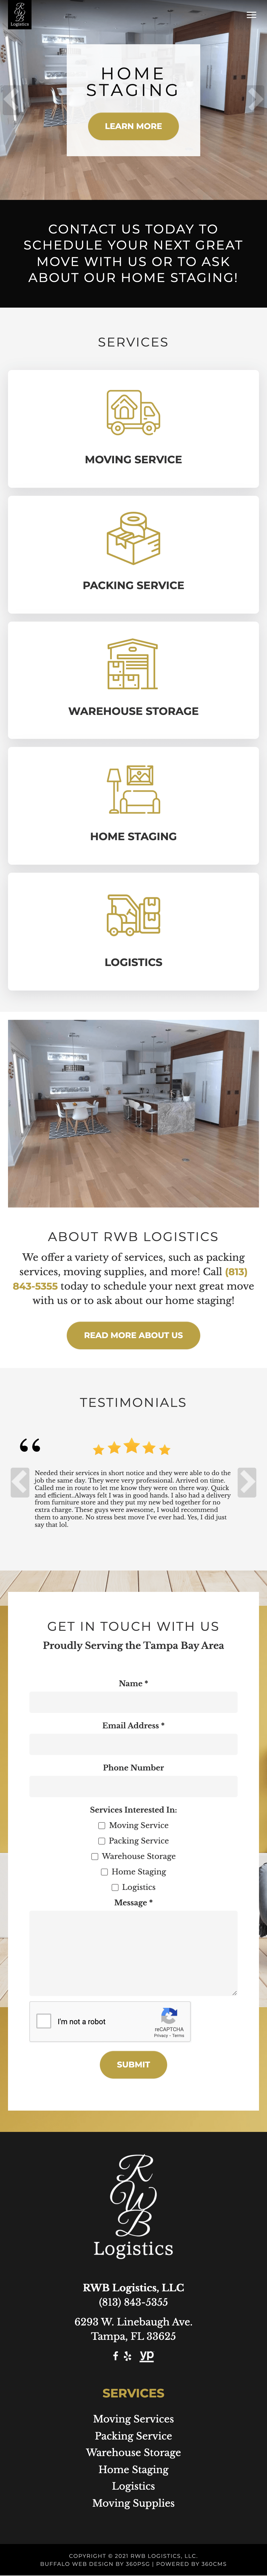 RWB Logistics Website - Mobile